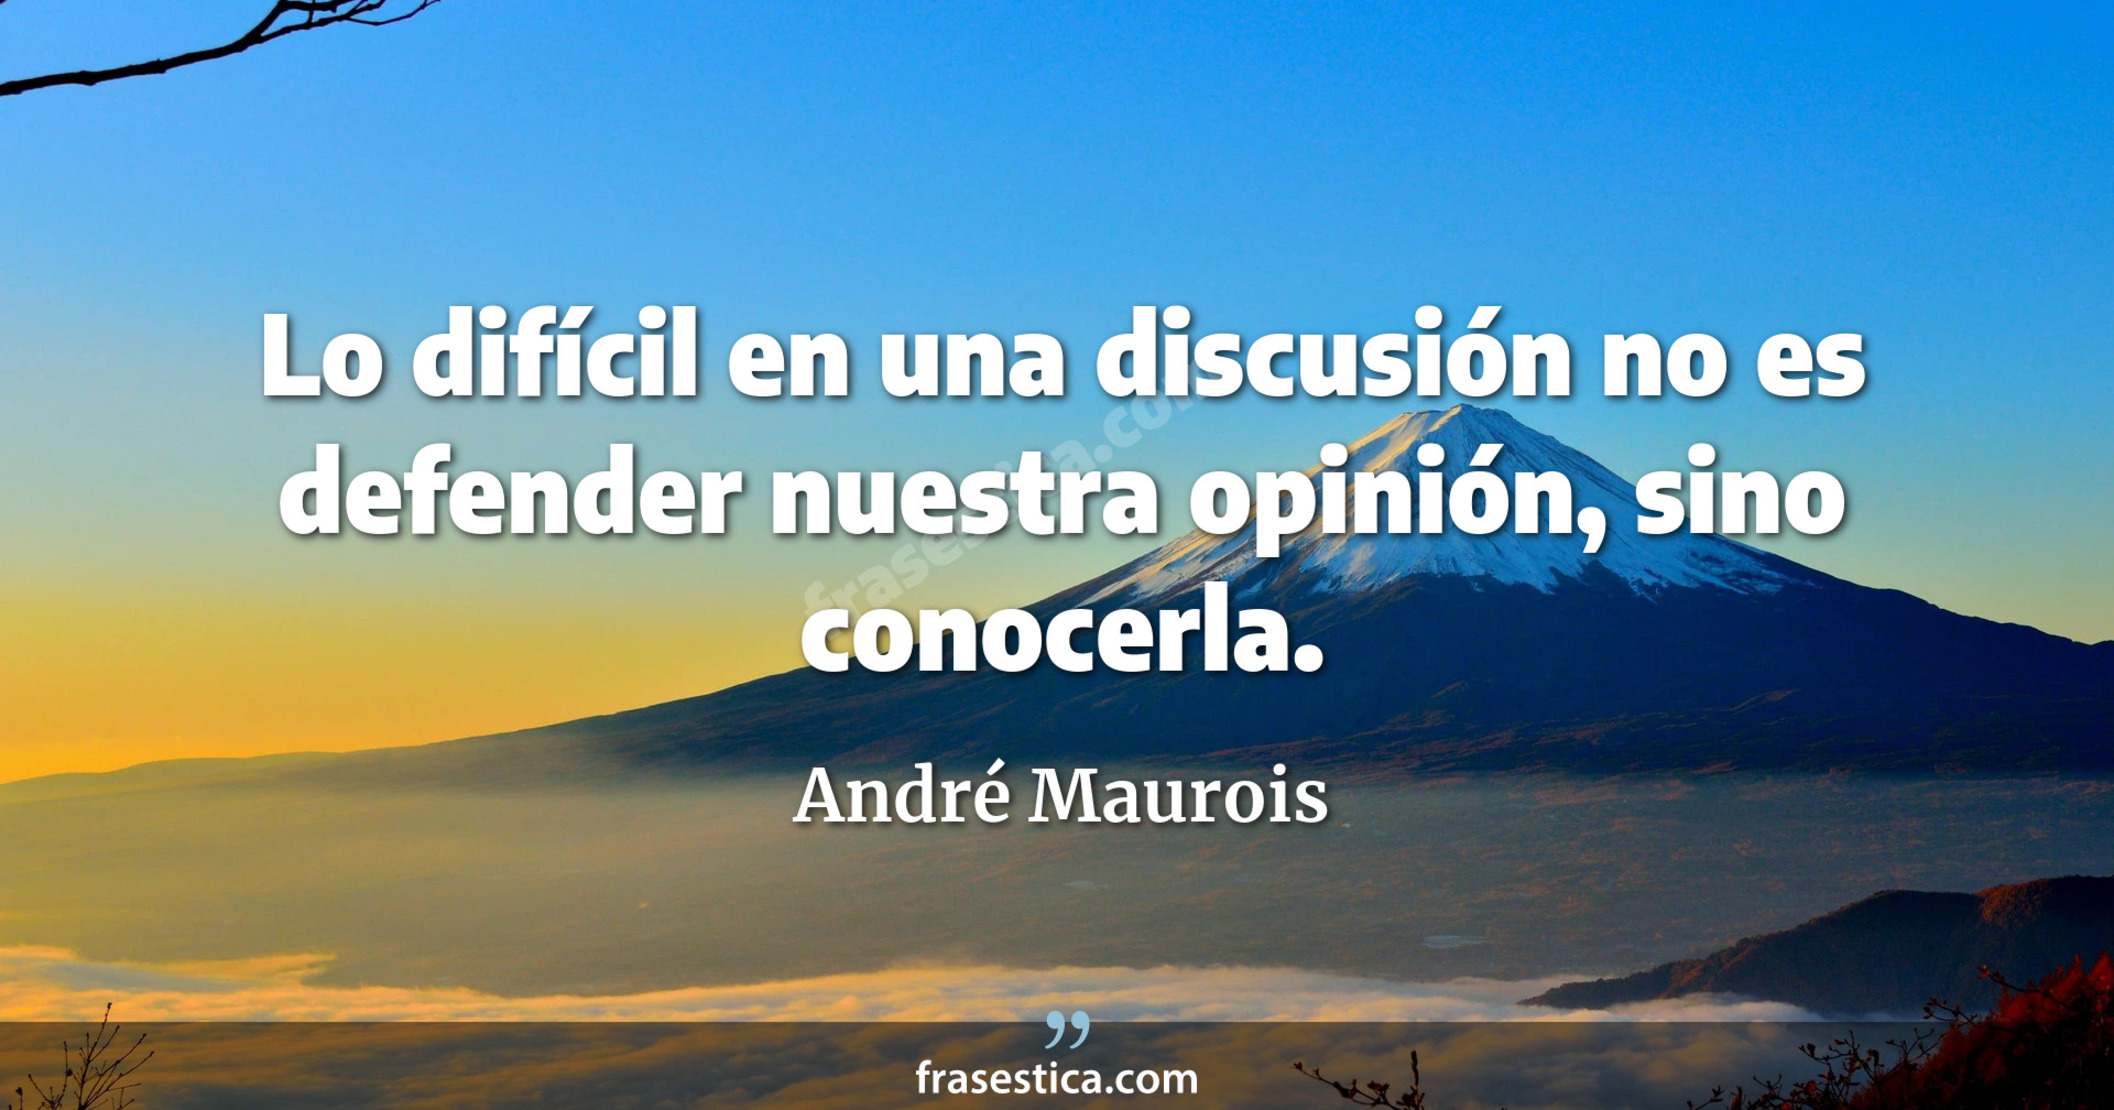 Lo difícil en una discusión no es defender nuestra opinión, sino conocerla. - André Maurois